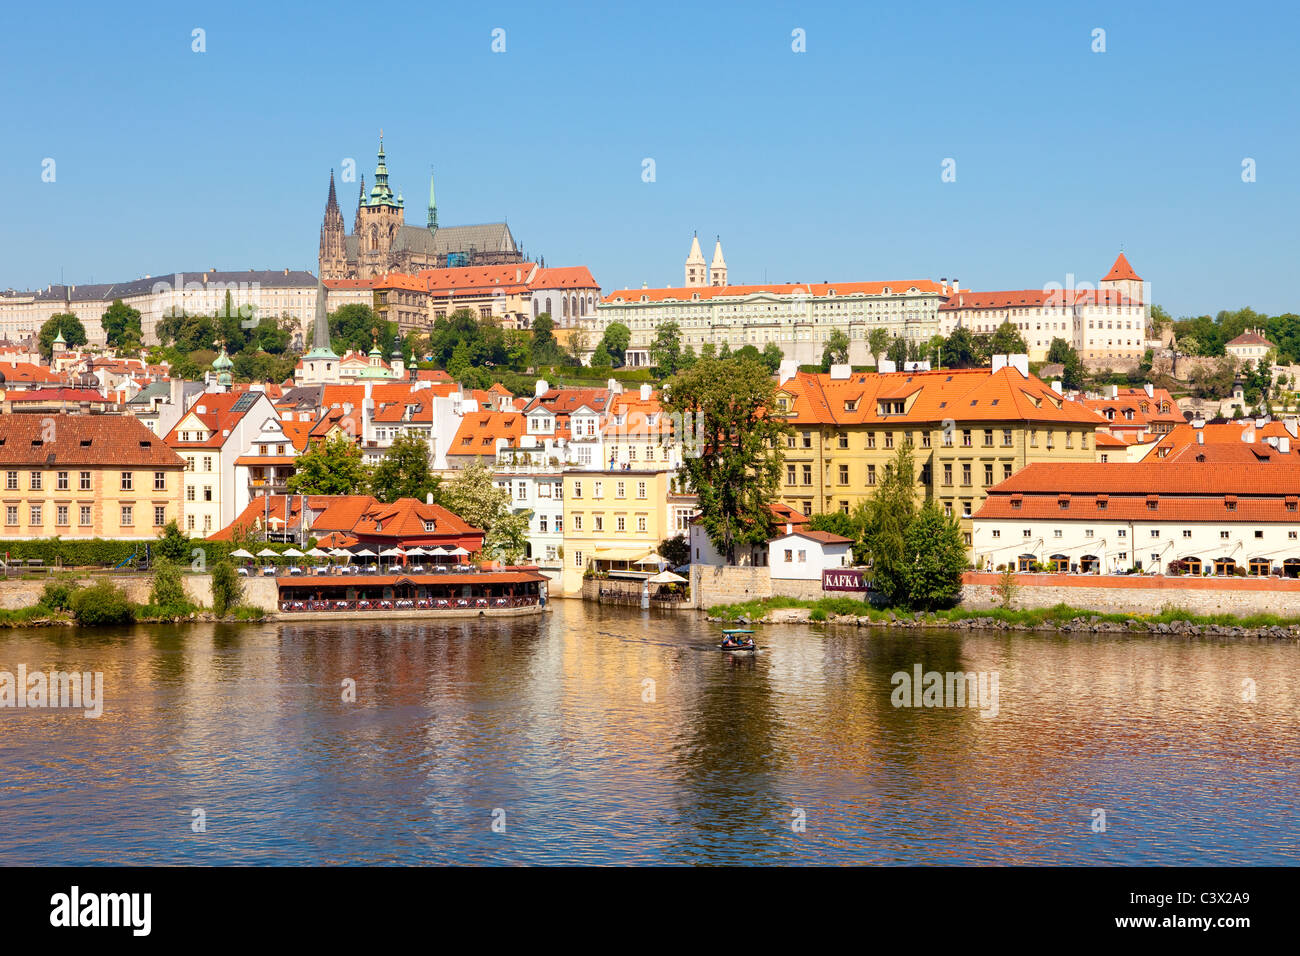 Tschechische Republik, Prag - Burg Hradschin, st.-Veits-Dom und Kleinseite Stockfoto